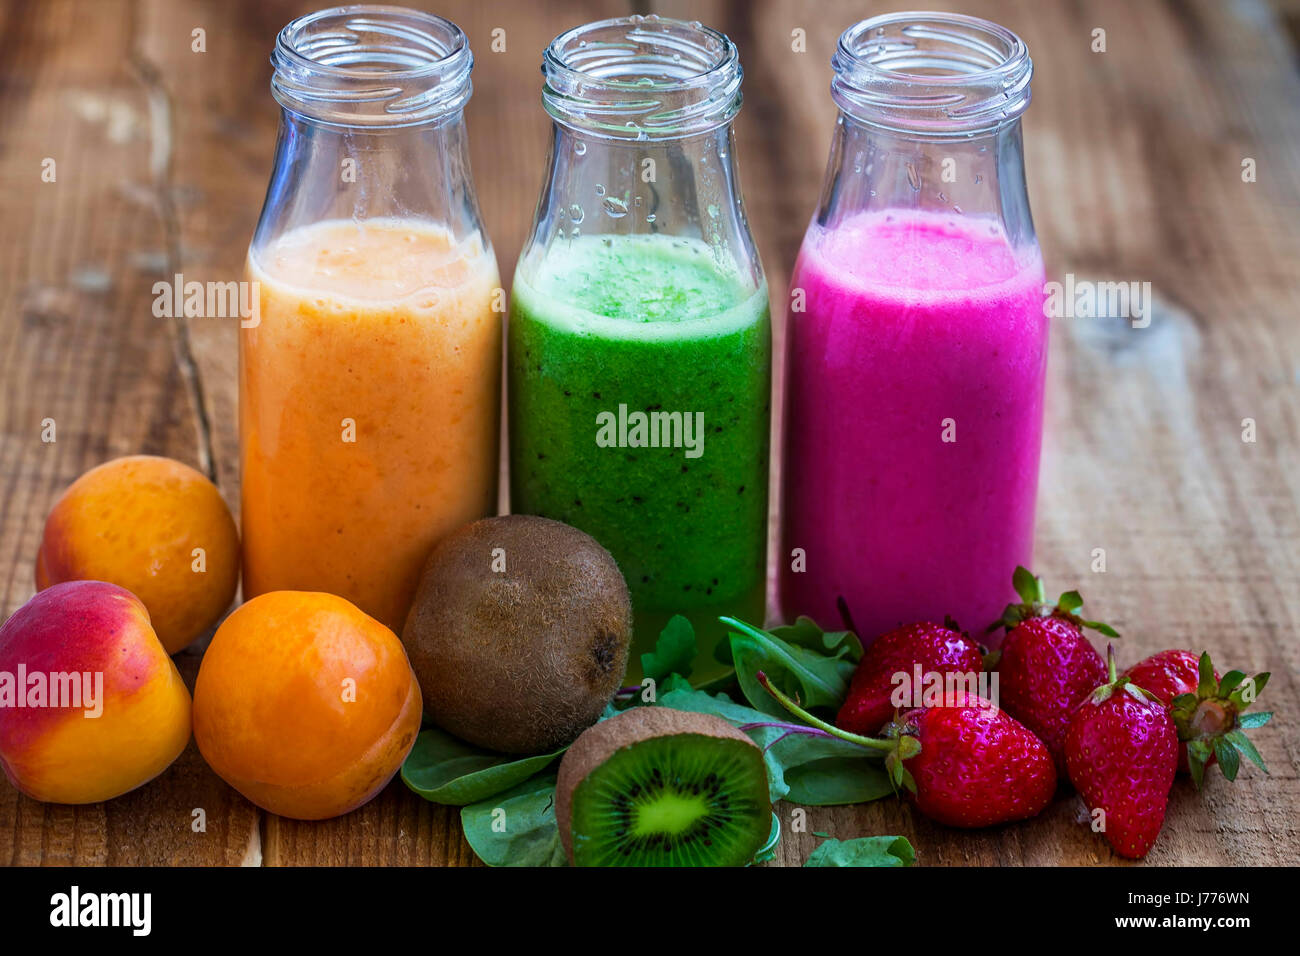 Frische gesunde drei Arten von Früchten Säfte oder Smoothies, Orange, grün und Pink mit Erdbeeren, Aprikosen, Kiwi und Spinat Stockfoto